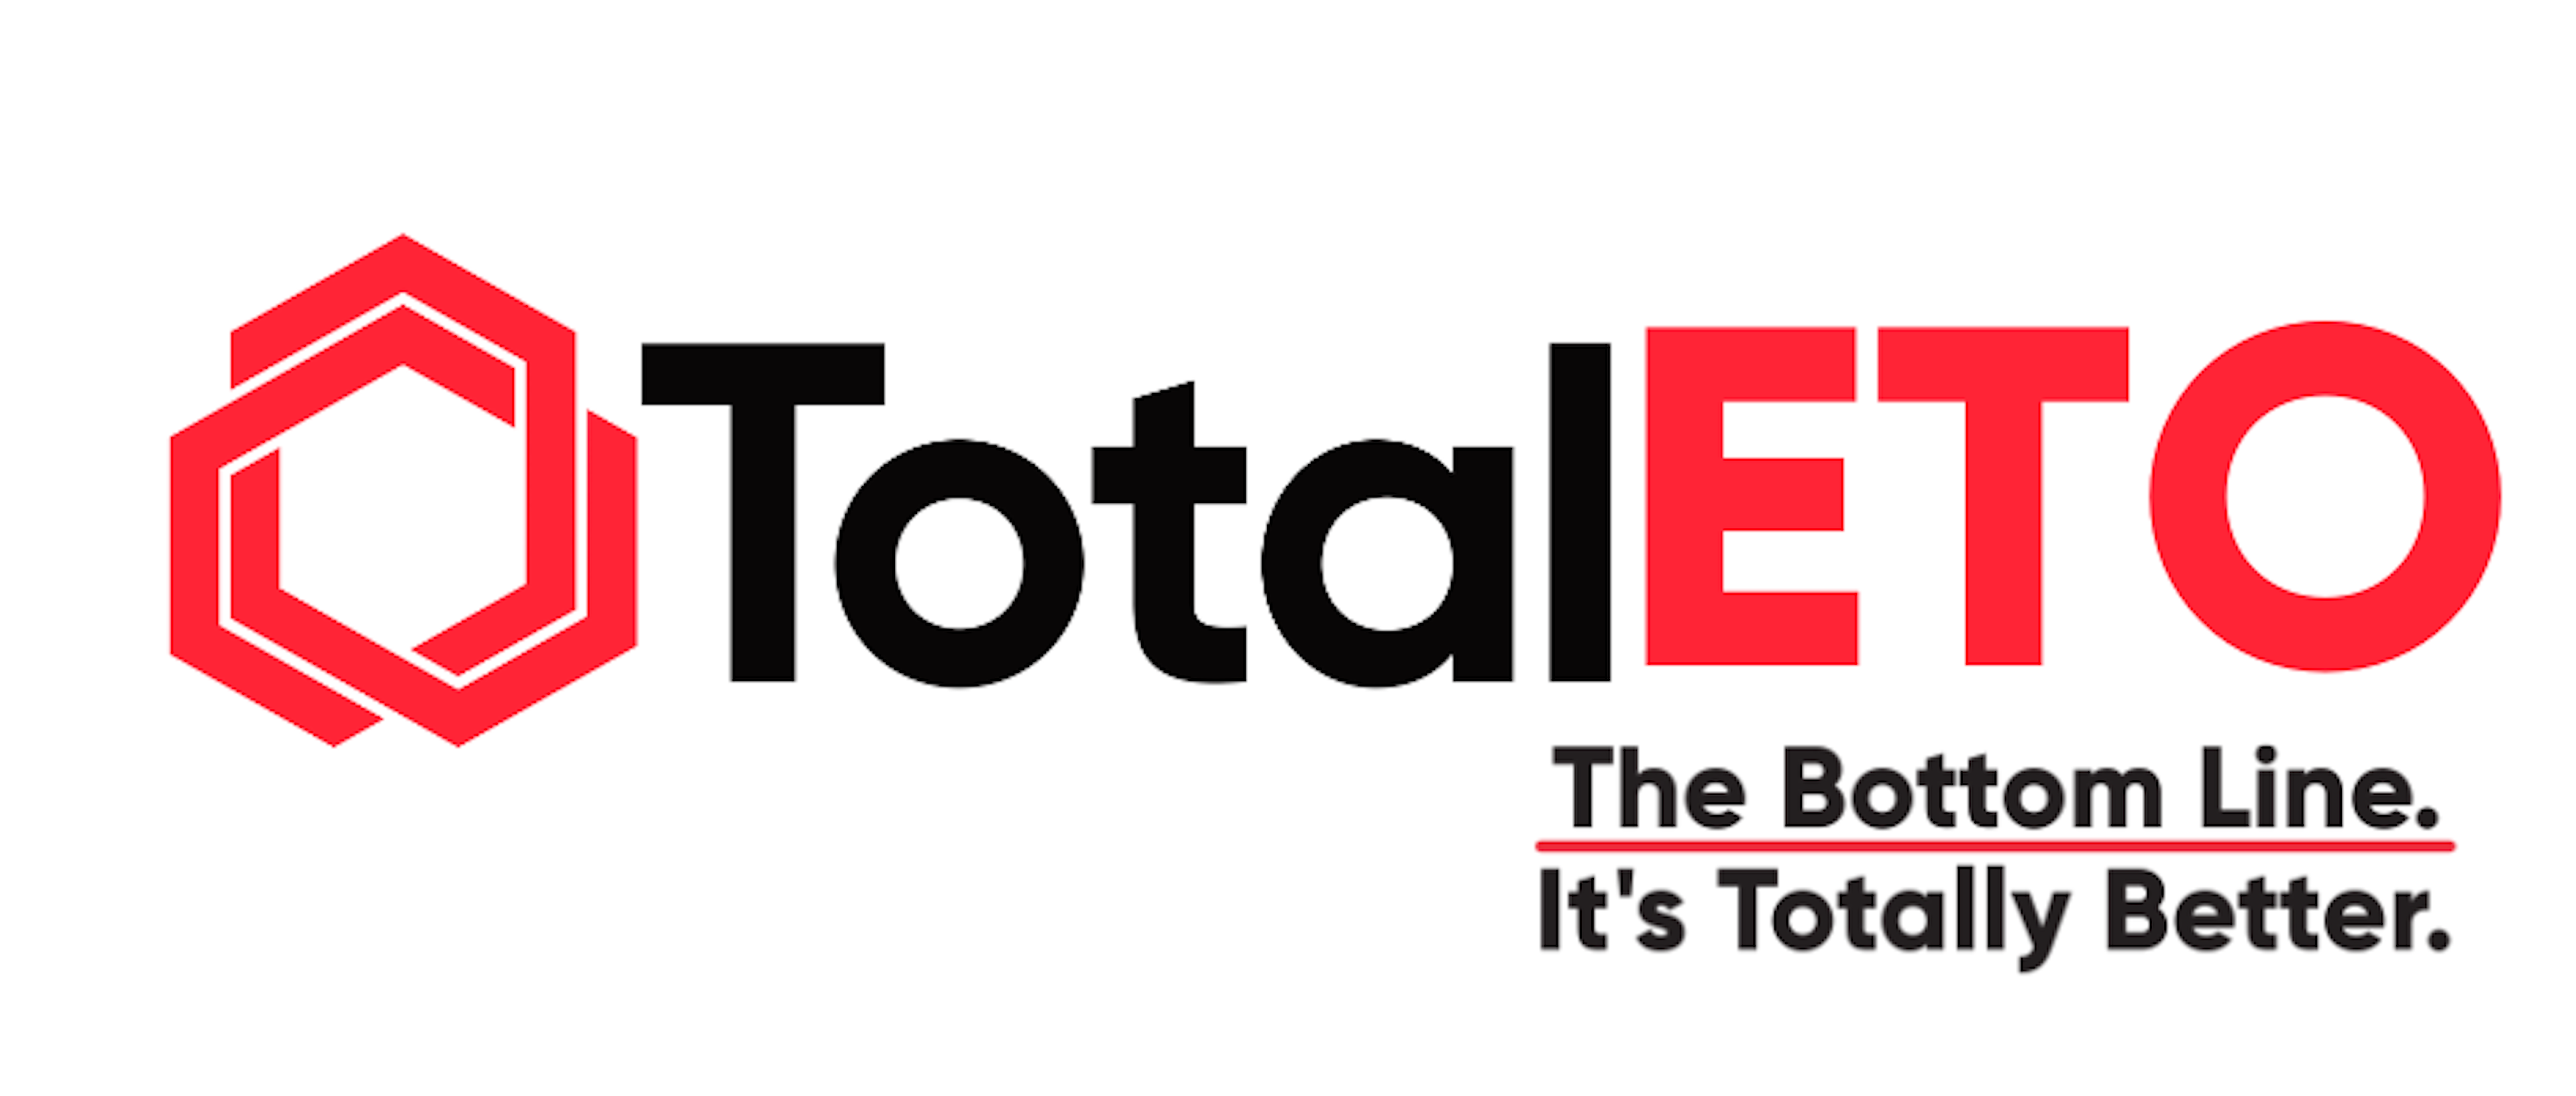 Total ETO Logo